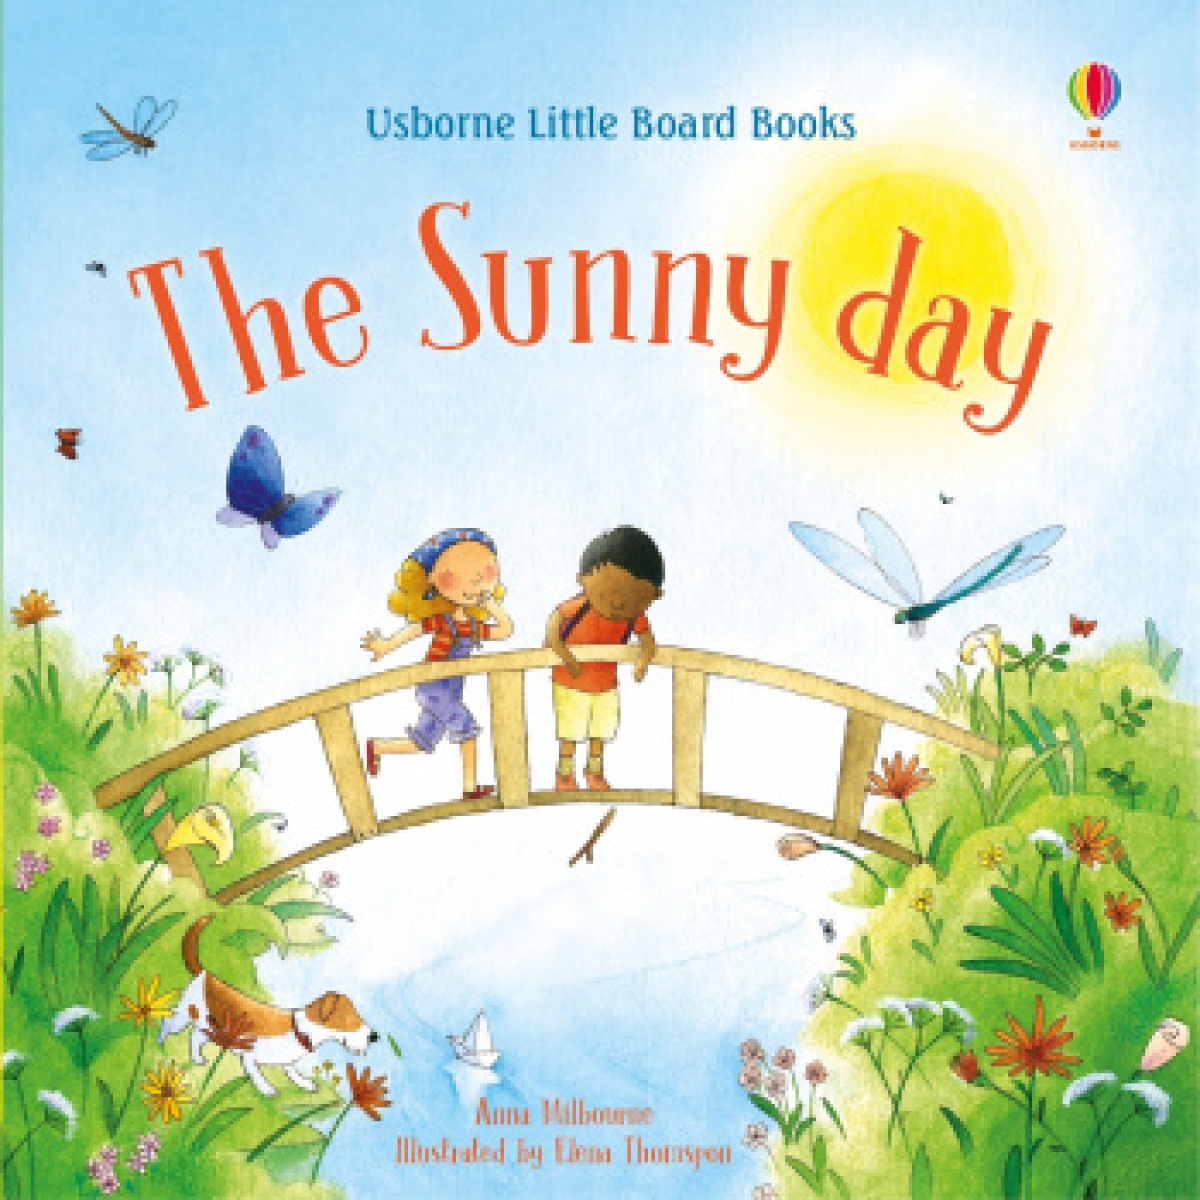 Anna, Milbourne The sunny day little board book 